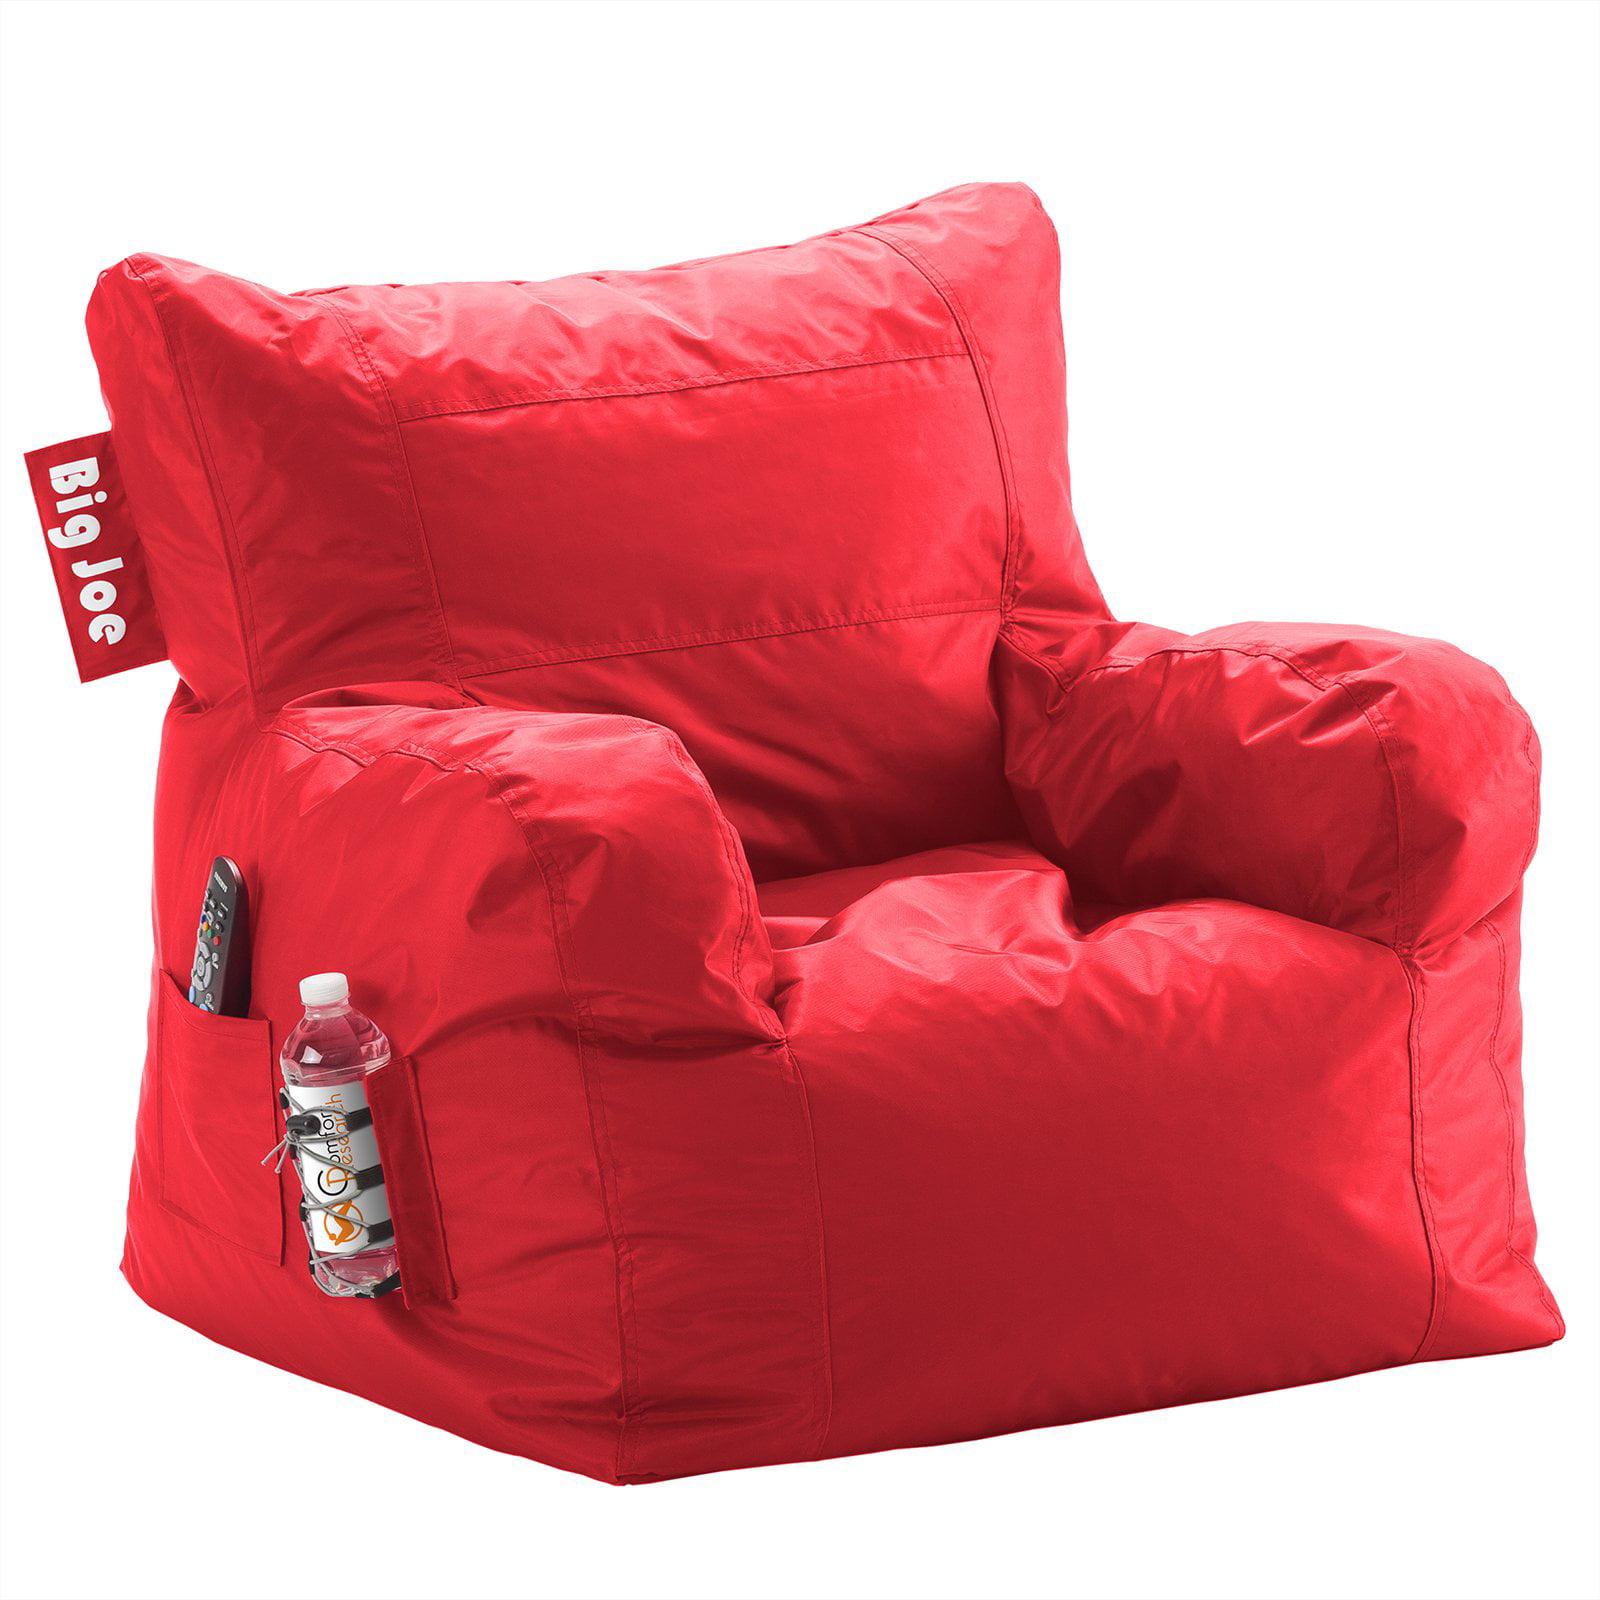 Big Joe Dorm Bean Bag Chair Two Tone Red